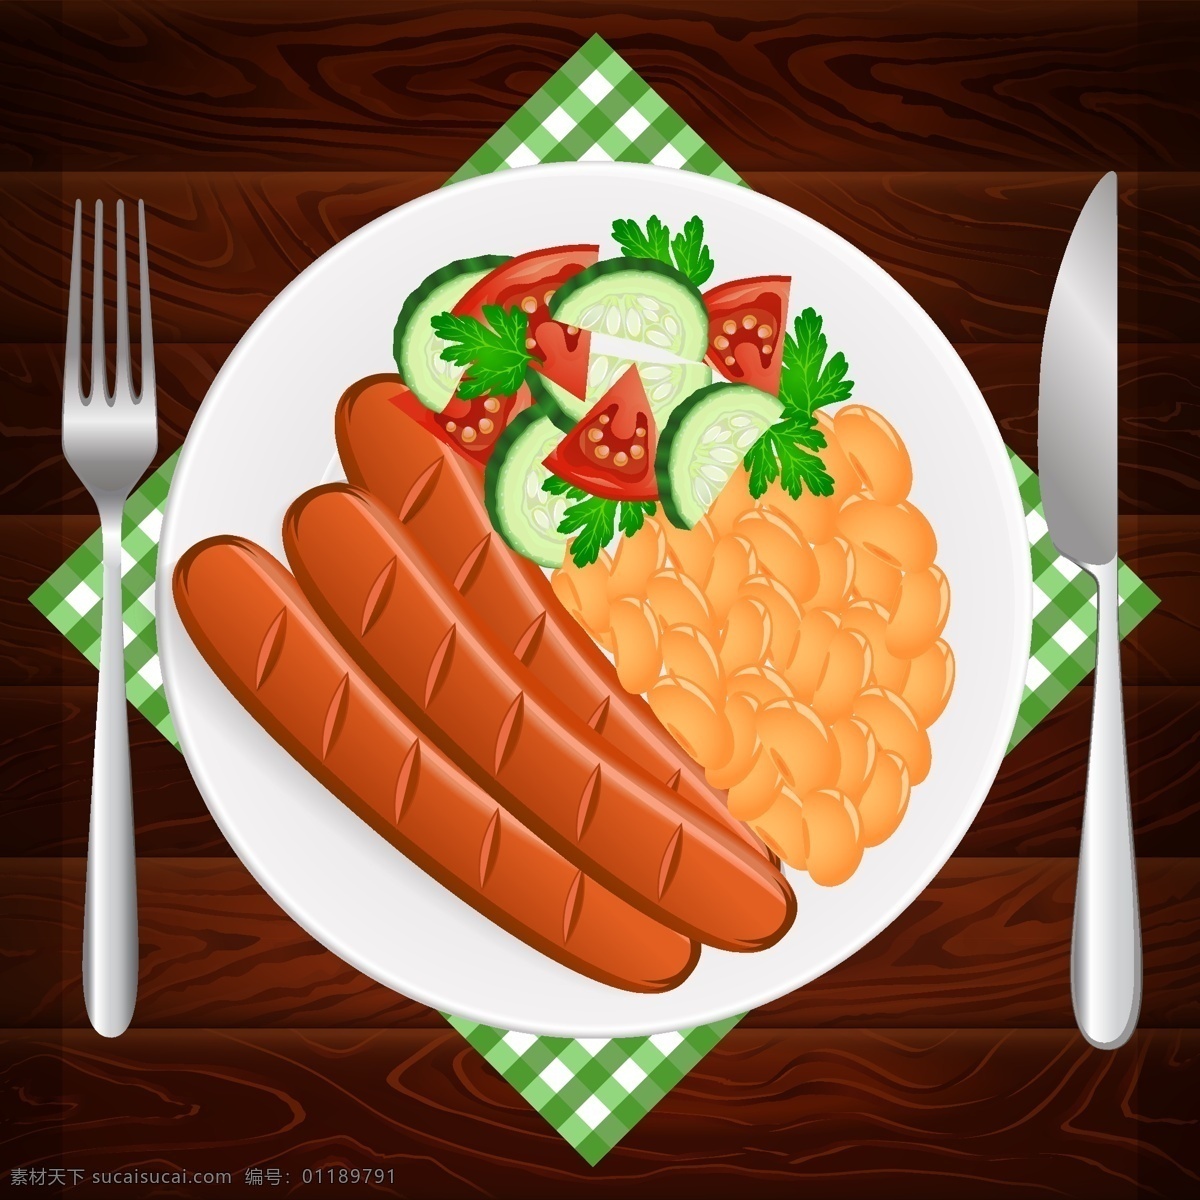 时尚 美食 快餐 插画 西餐 美味 香肠 蔬菜 沙拉 餐具